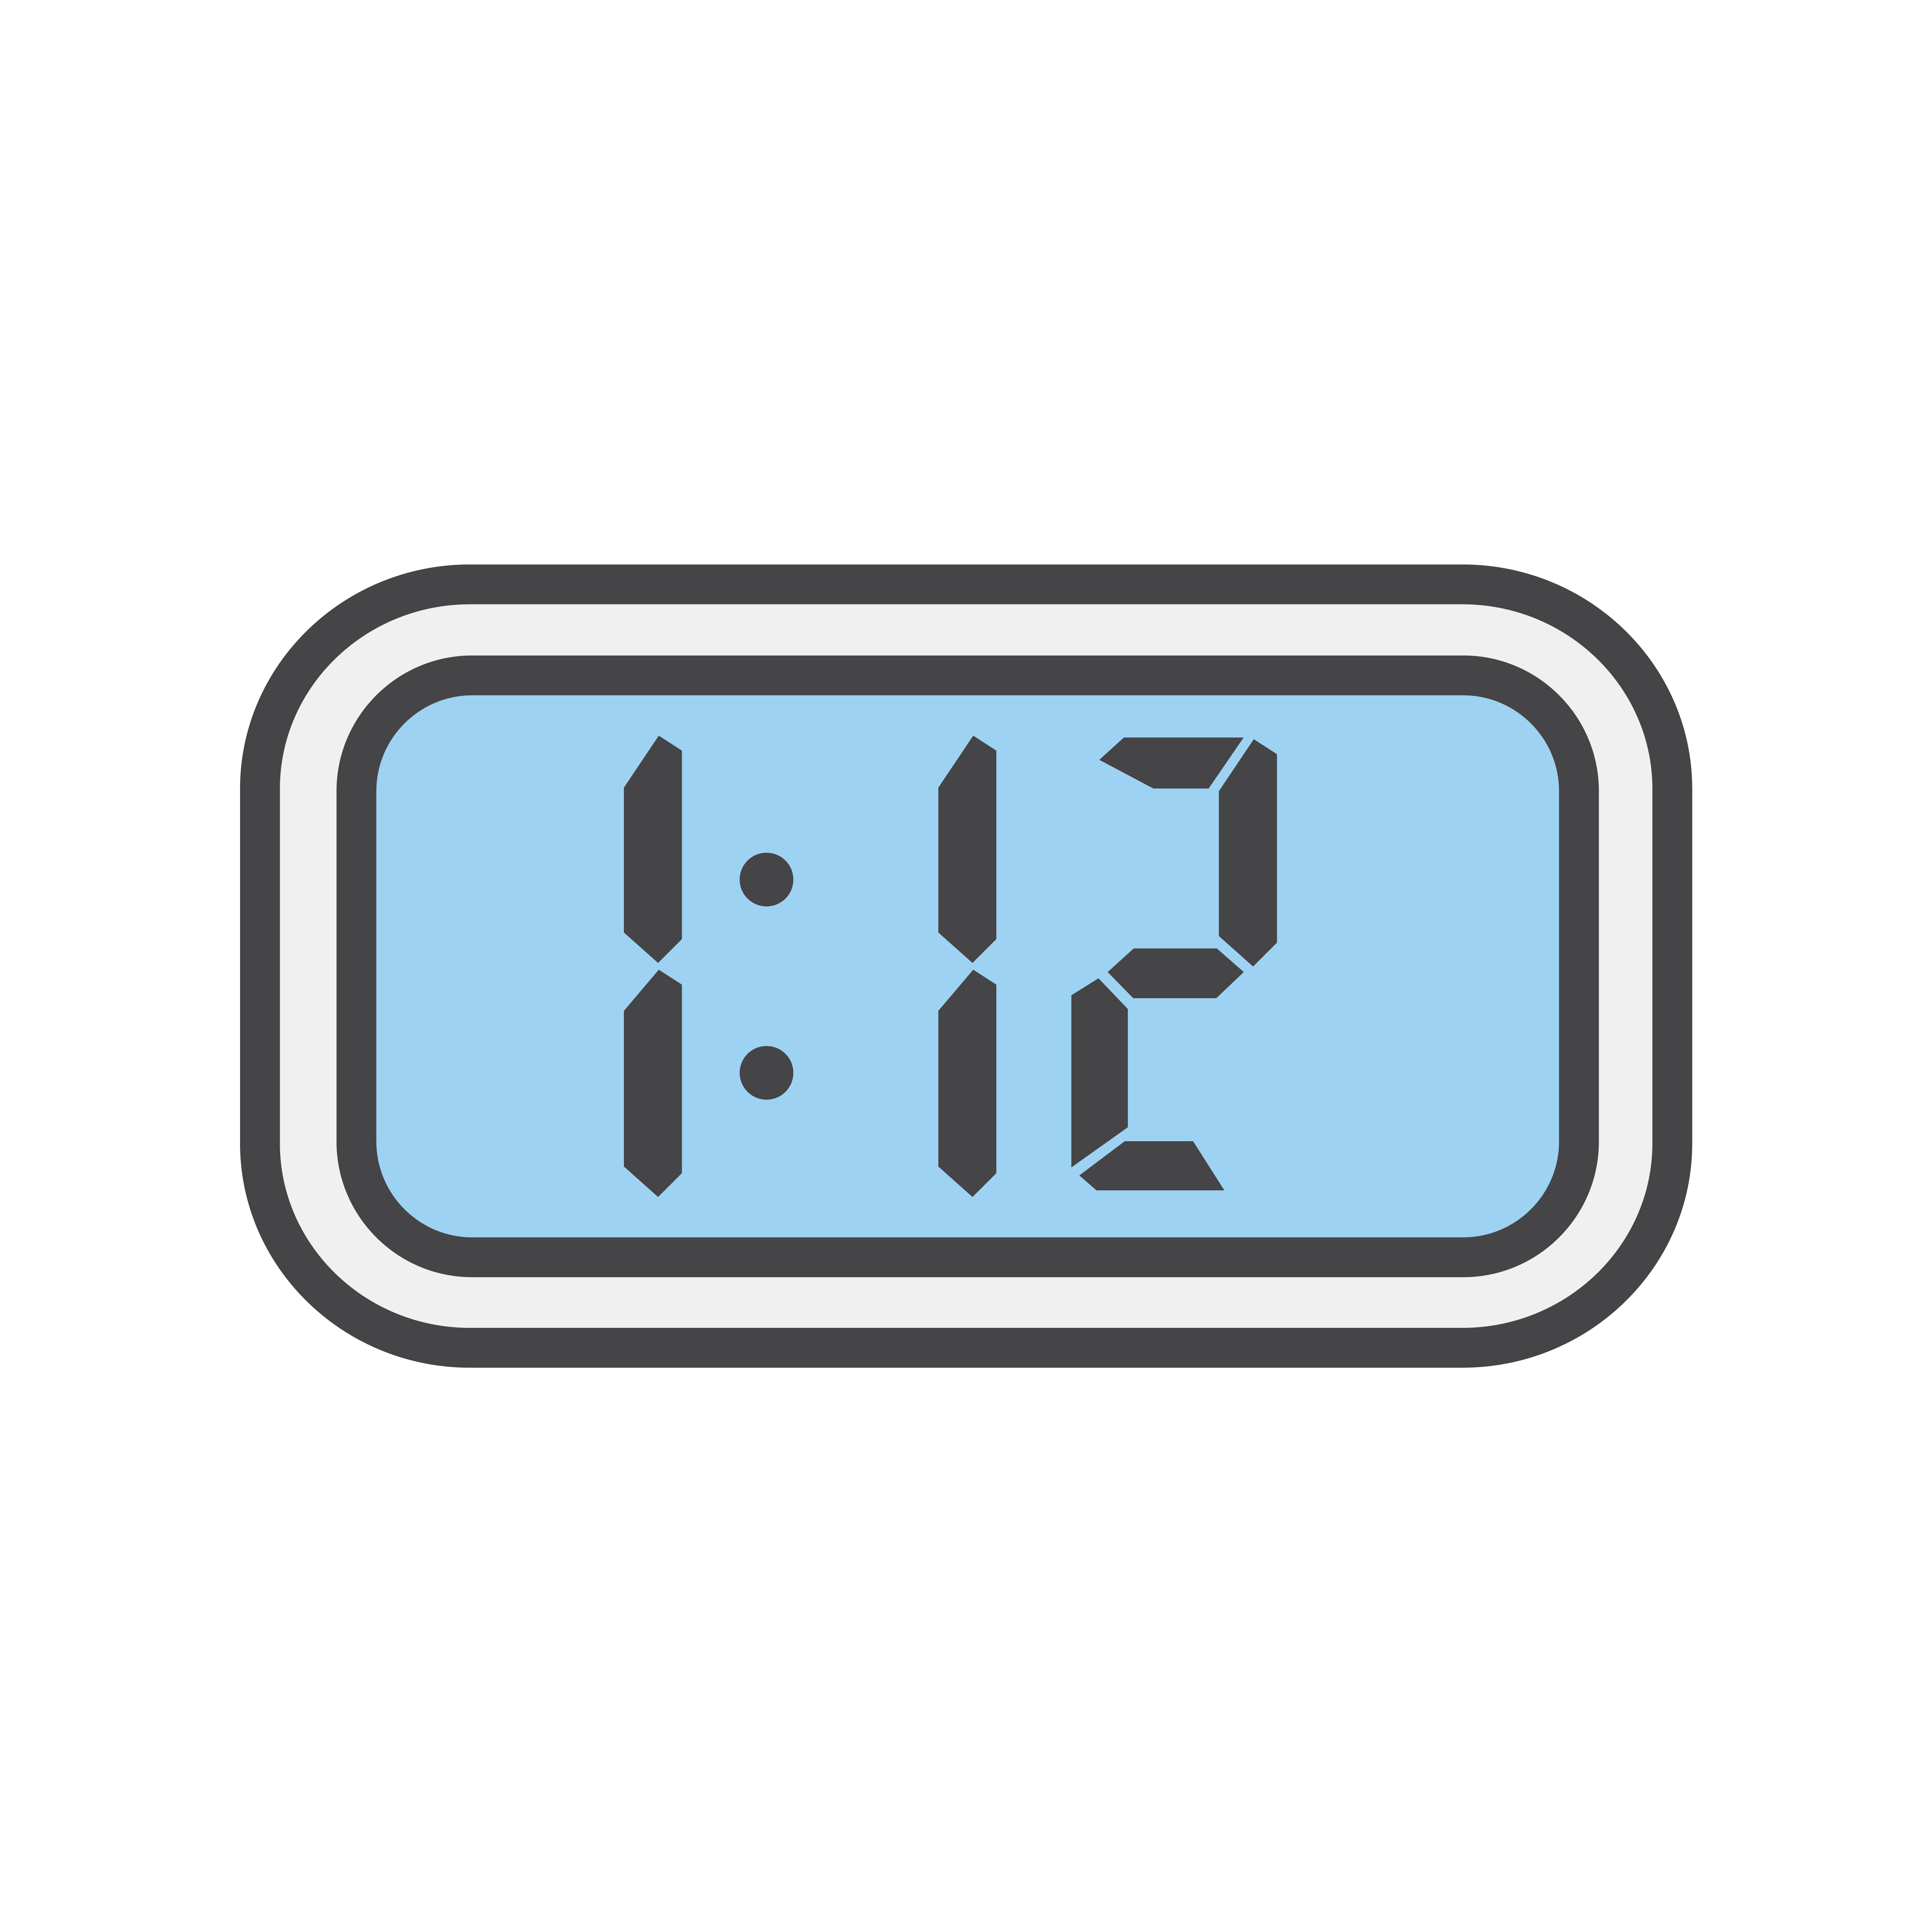 Illustration Of A Digital Alarm Clock Download Free Vectors Clipart